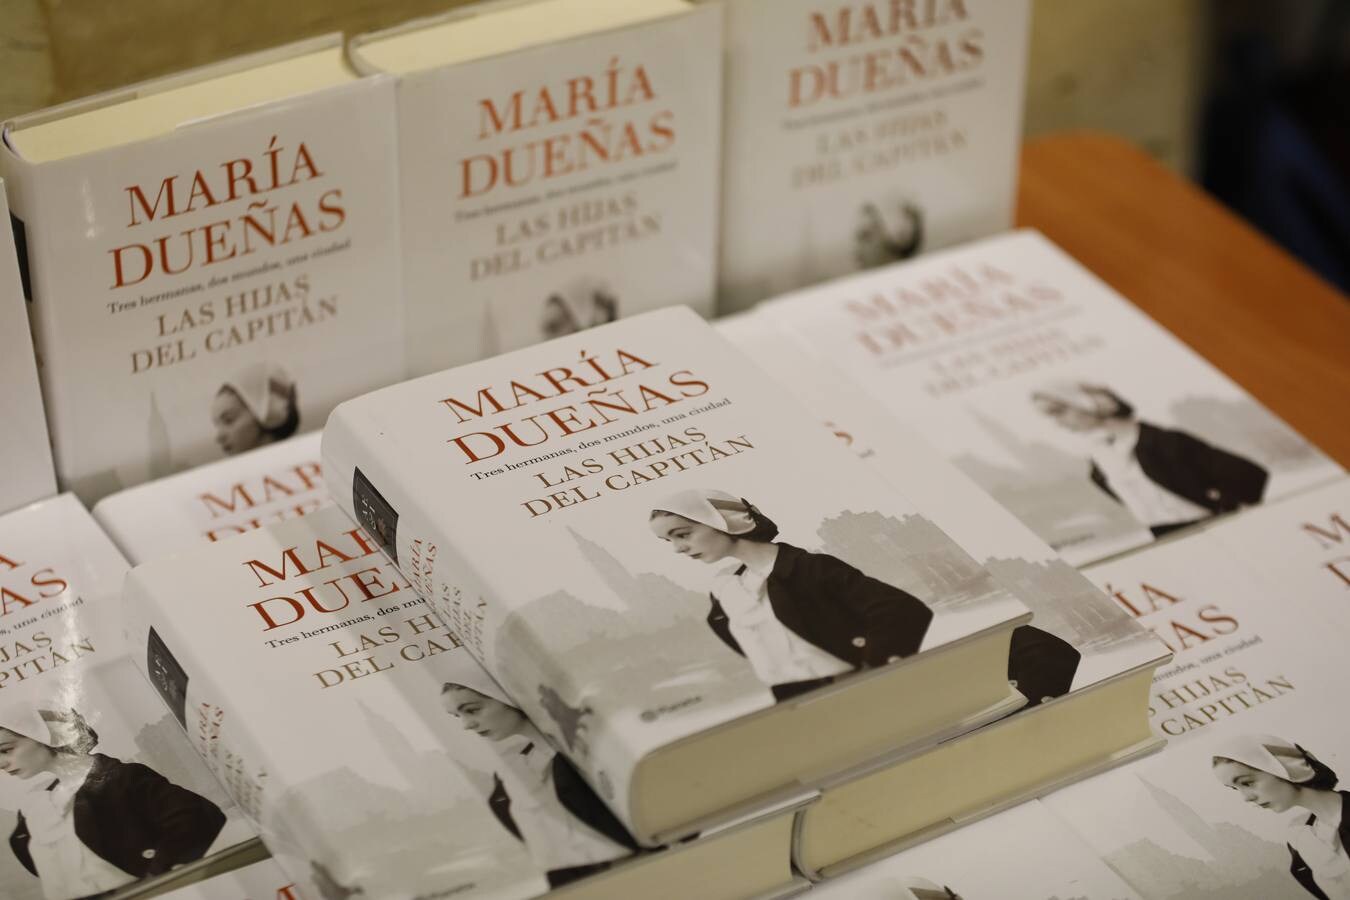 La presencia de María Dueñas en el Foro Cultural de ABC, en imágenes